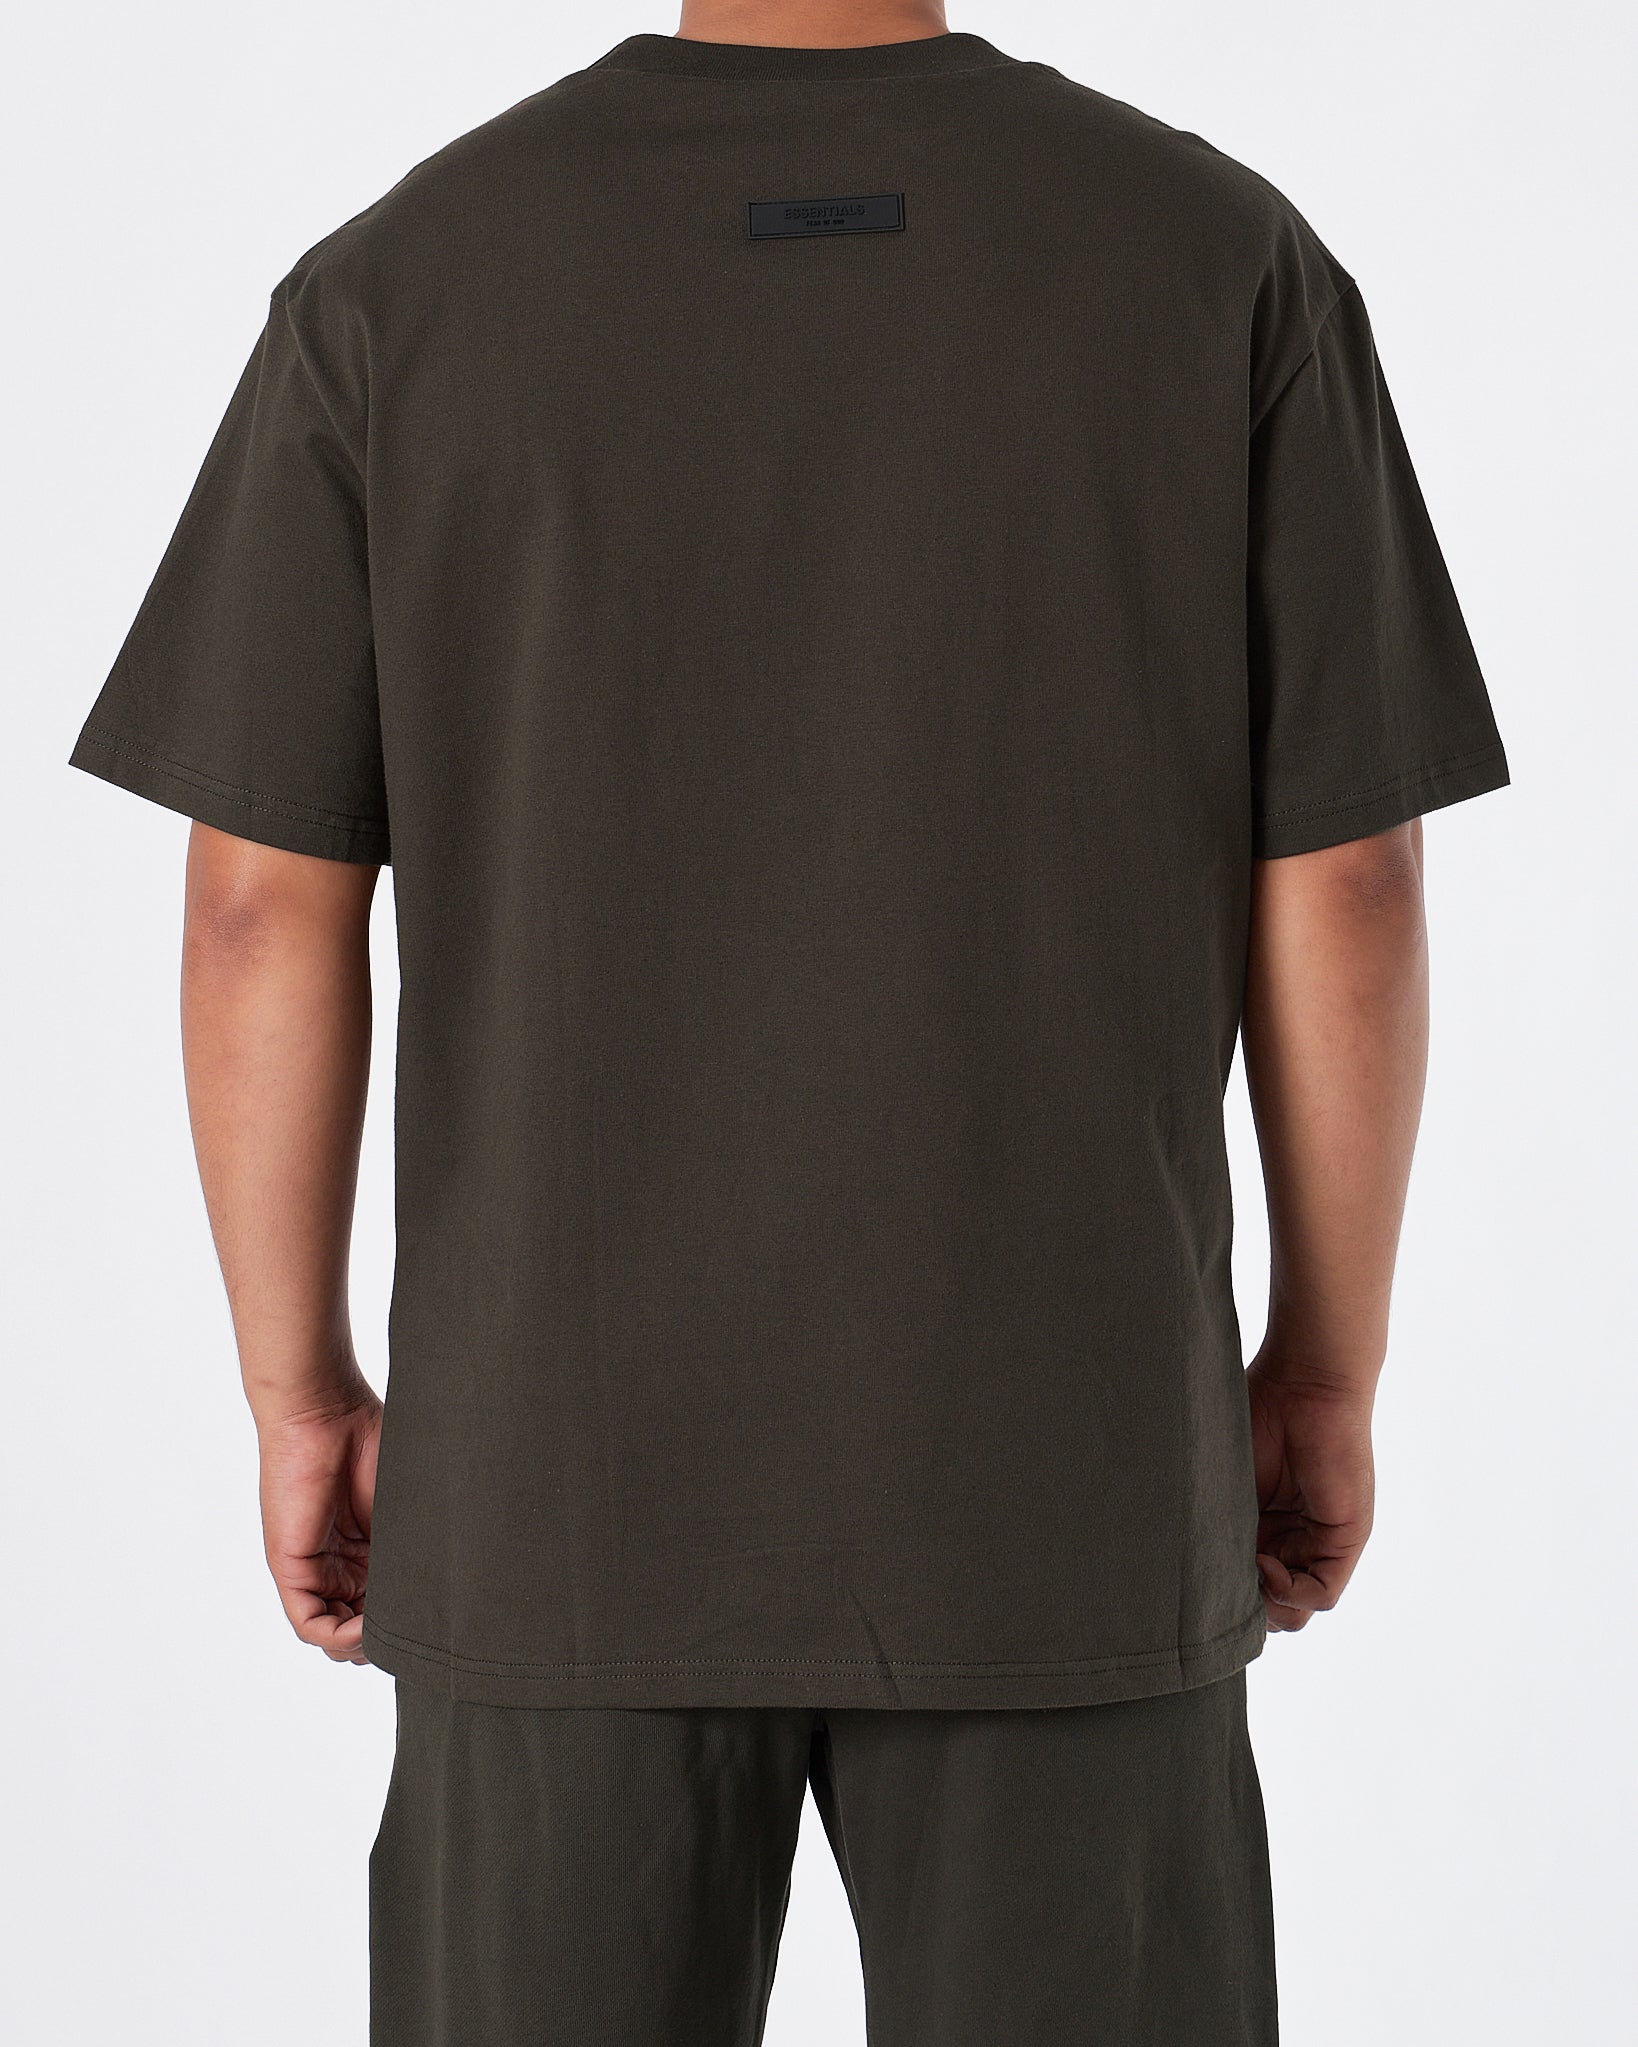 ESS Fear Of God Men Dark Green  T-Shirt 16.90